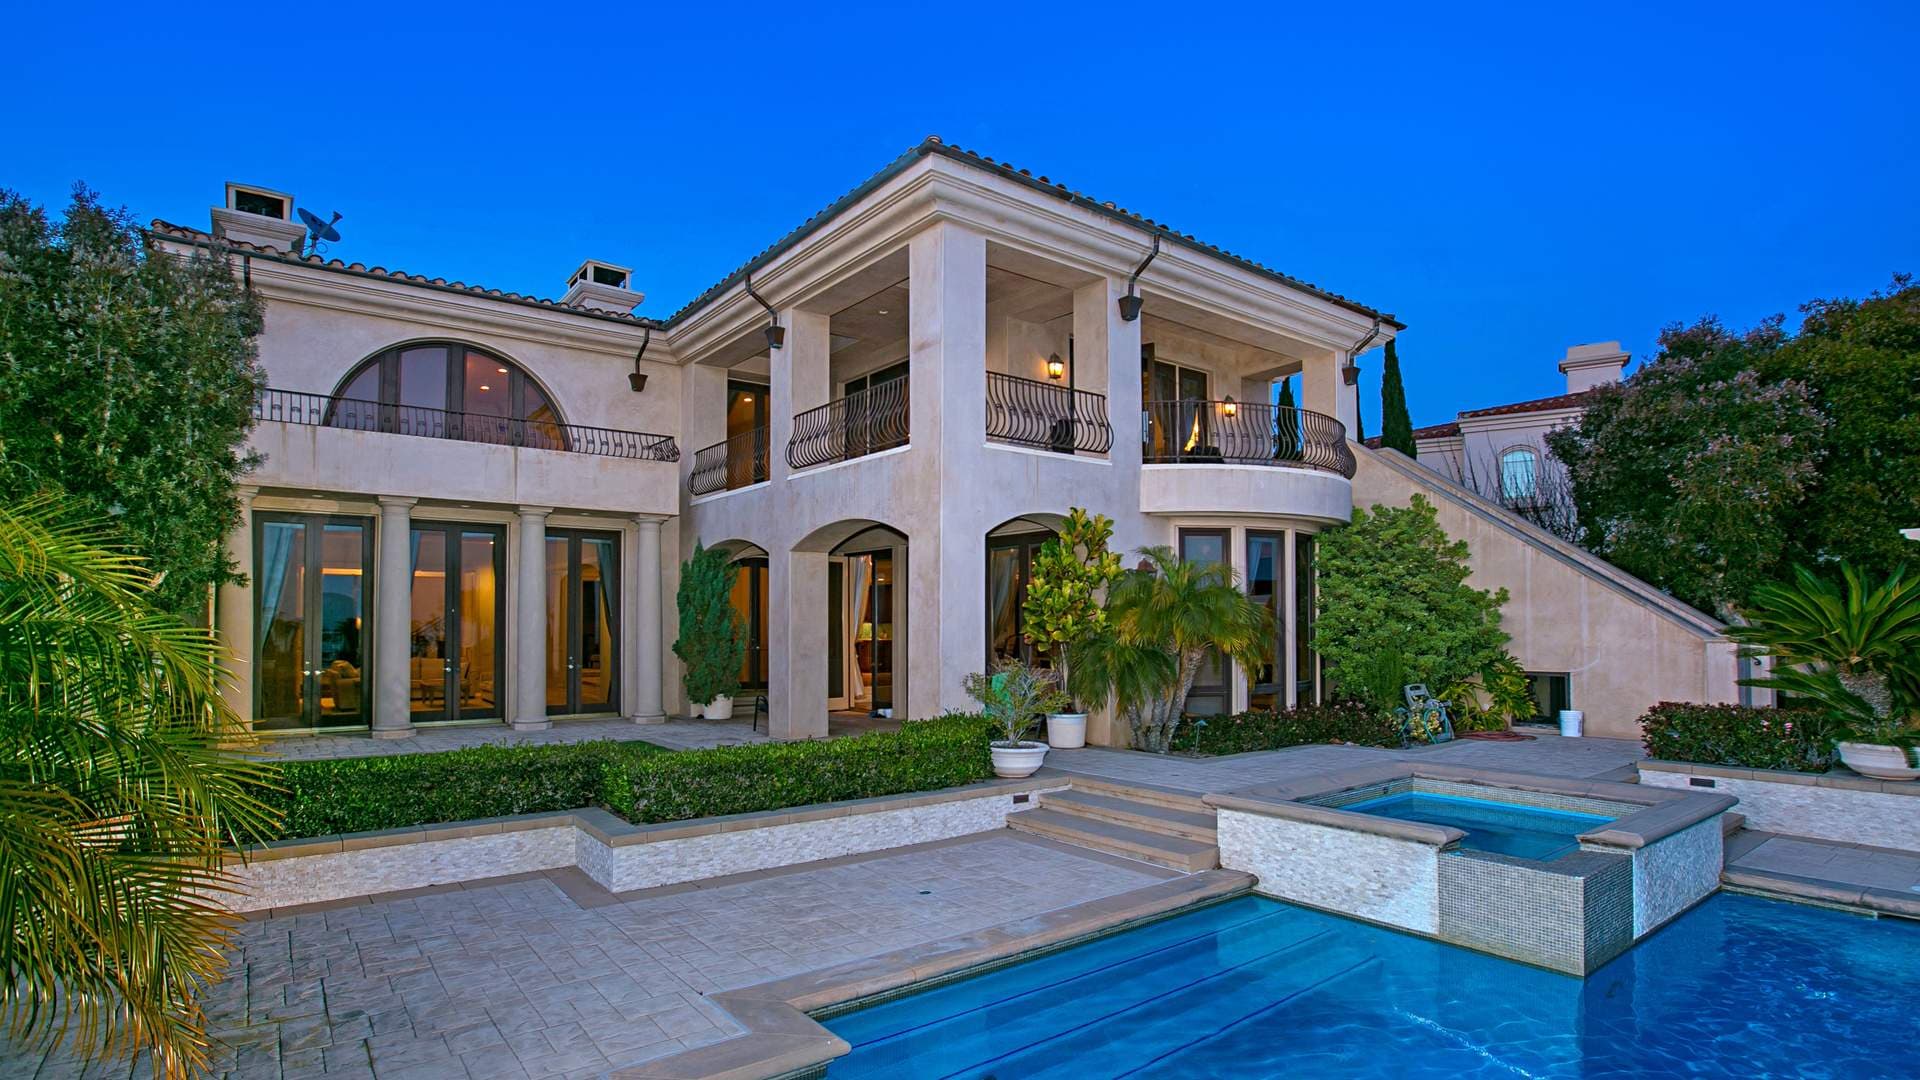 5 Bedroom Villa For Sale Newport Beach Lp01276 18530e870d7ad500.jpg